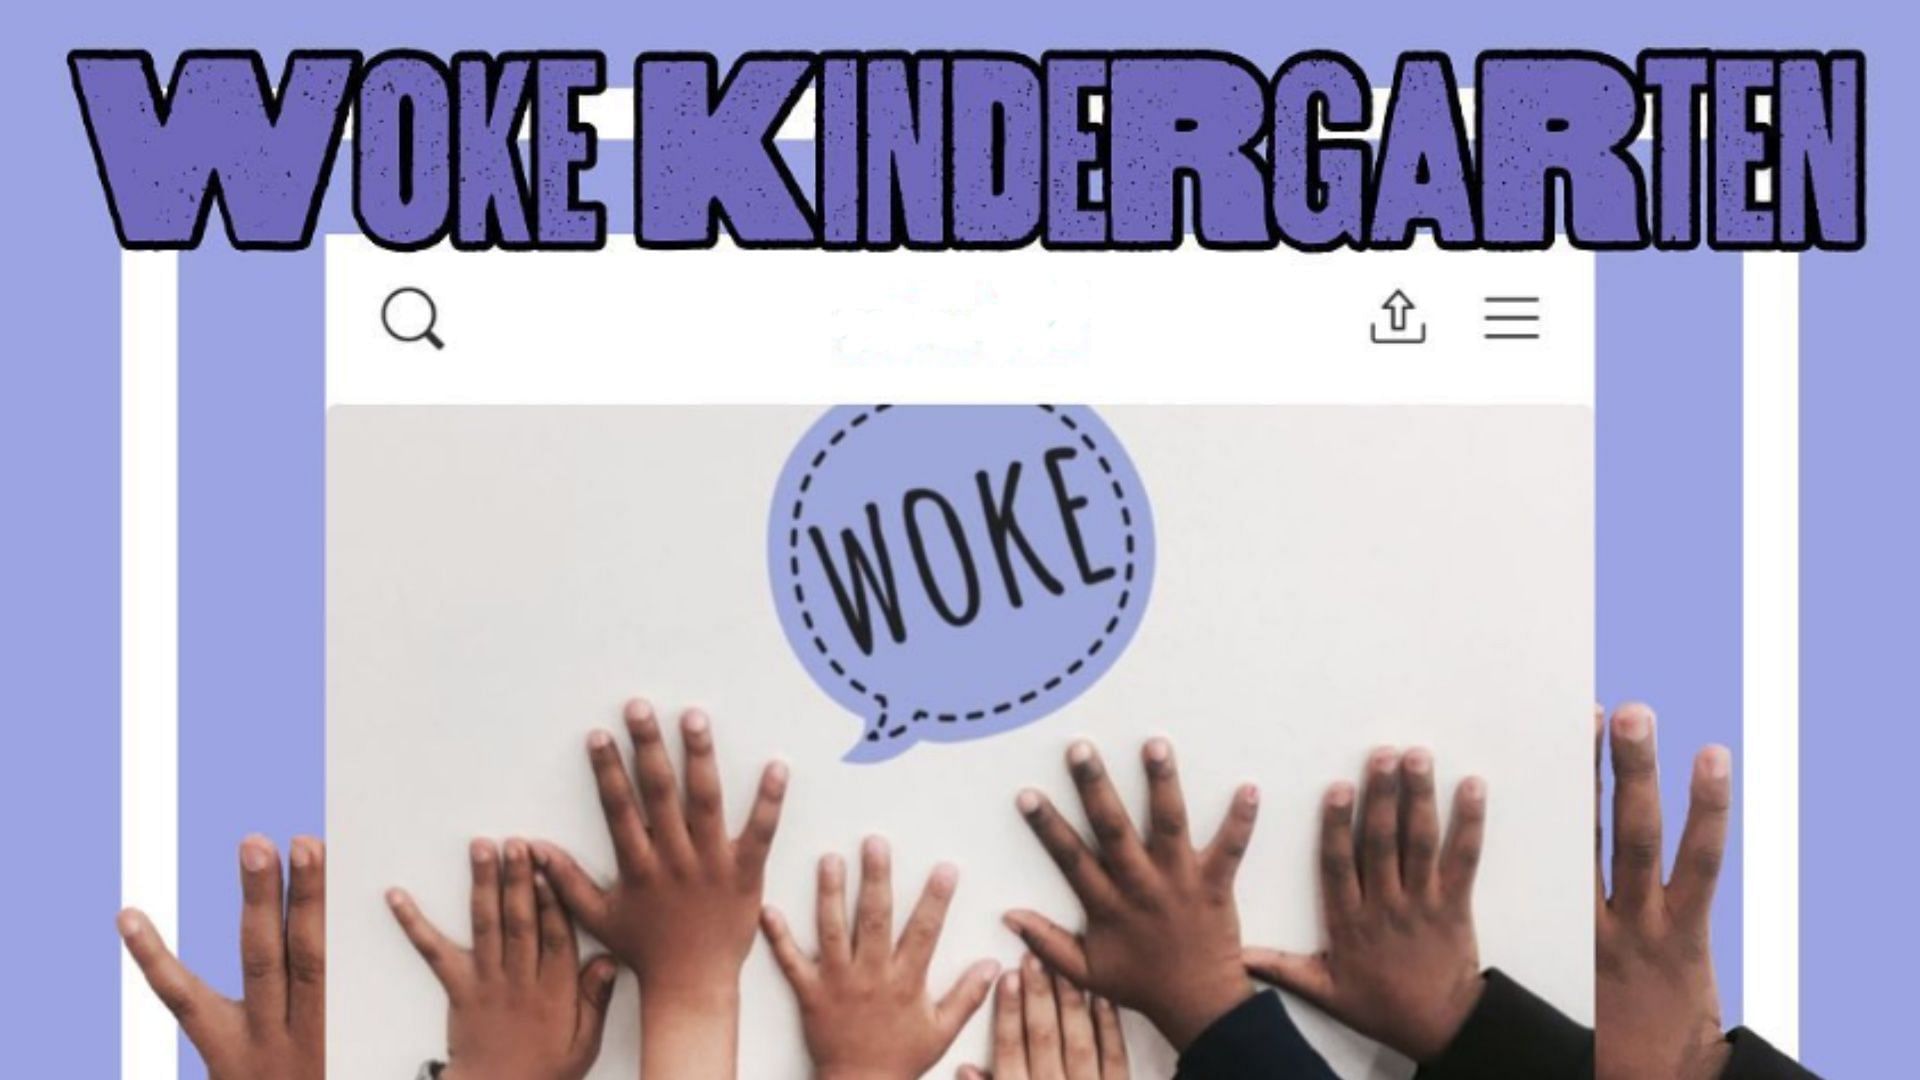 Woke Kindergarten was founded by Akiea Gross. (Image via Instagram/wokekindergarten)